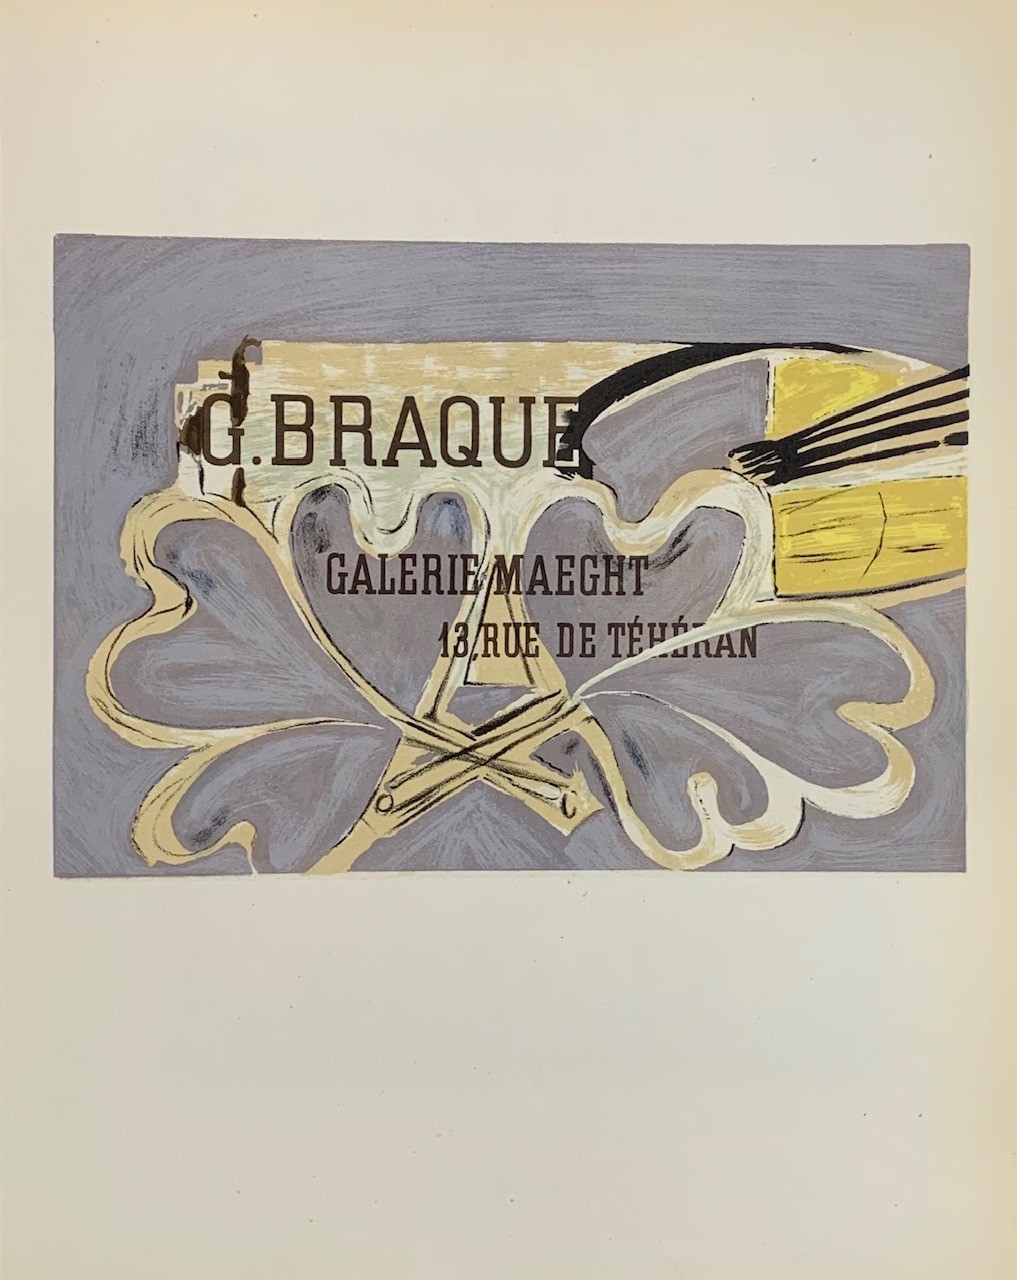 G.BRAQUE - BRAQUE Georges (D'après) (1882 - 1963) - Lithographie